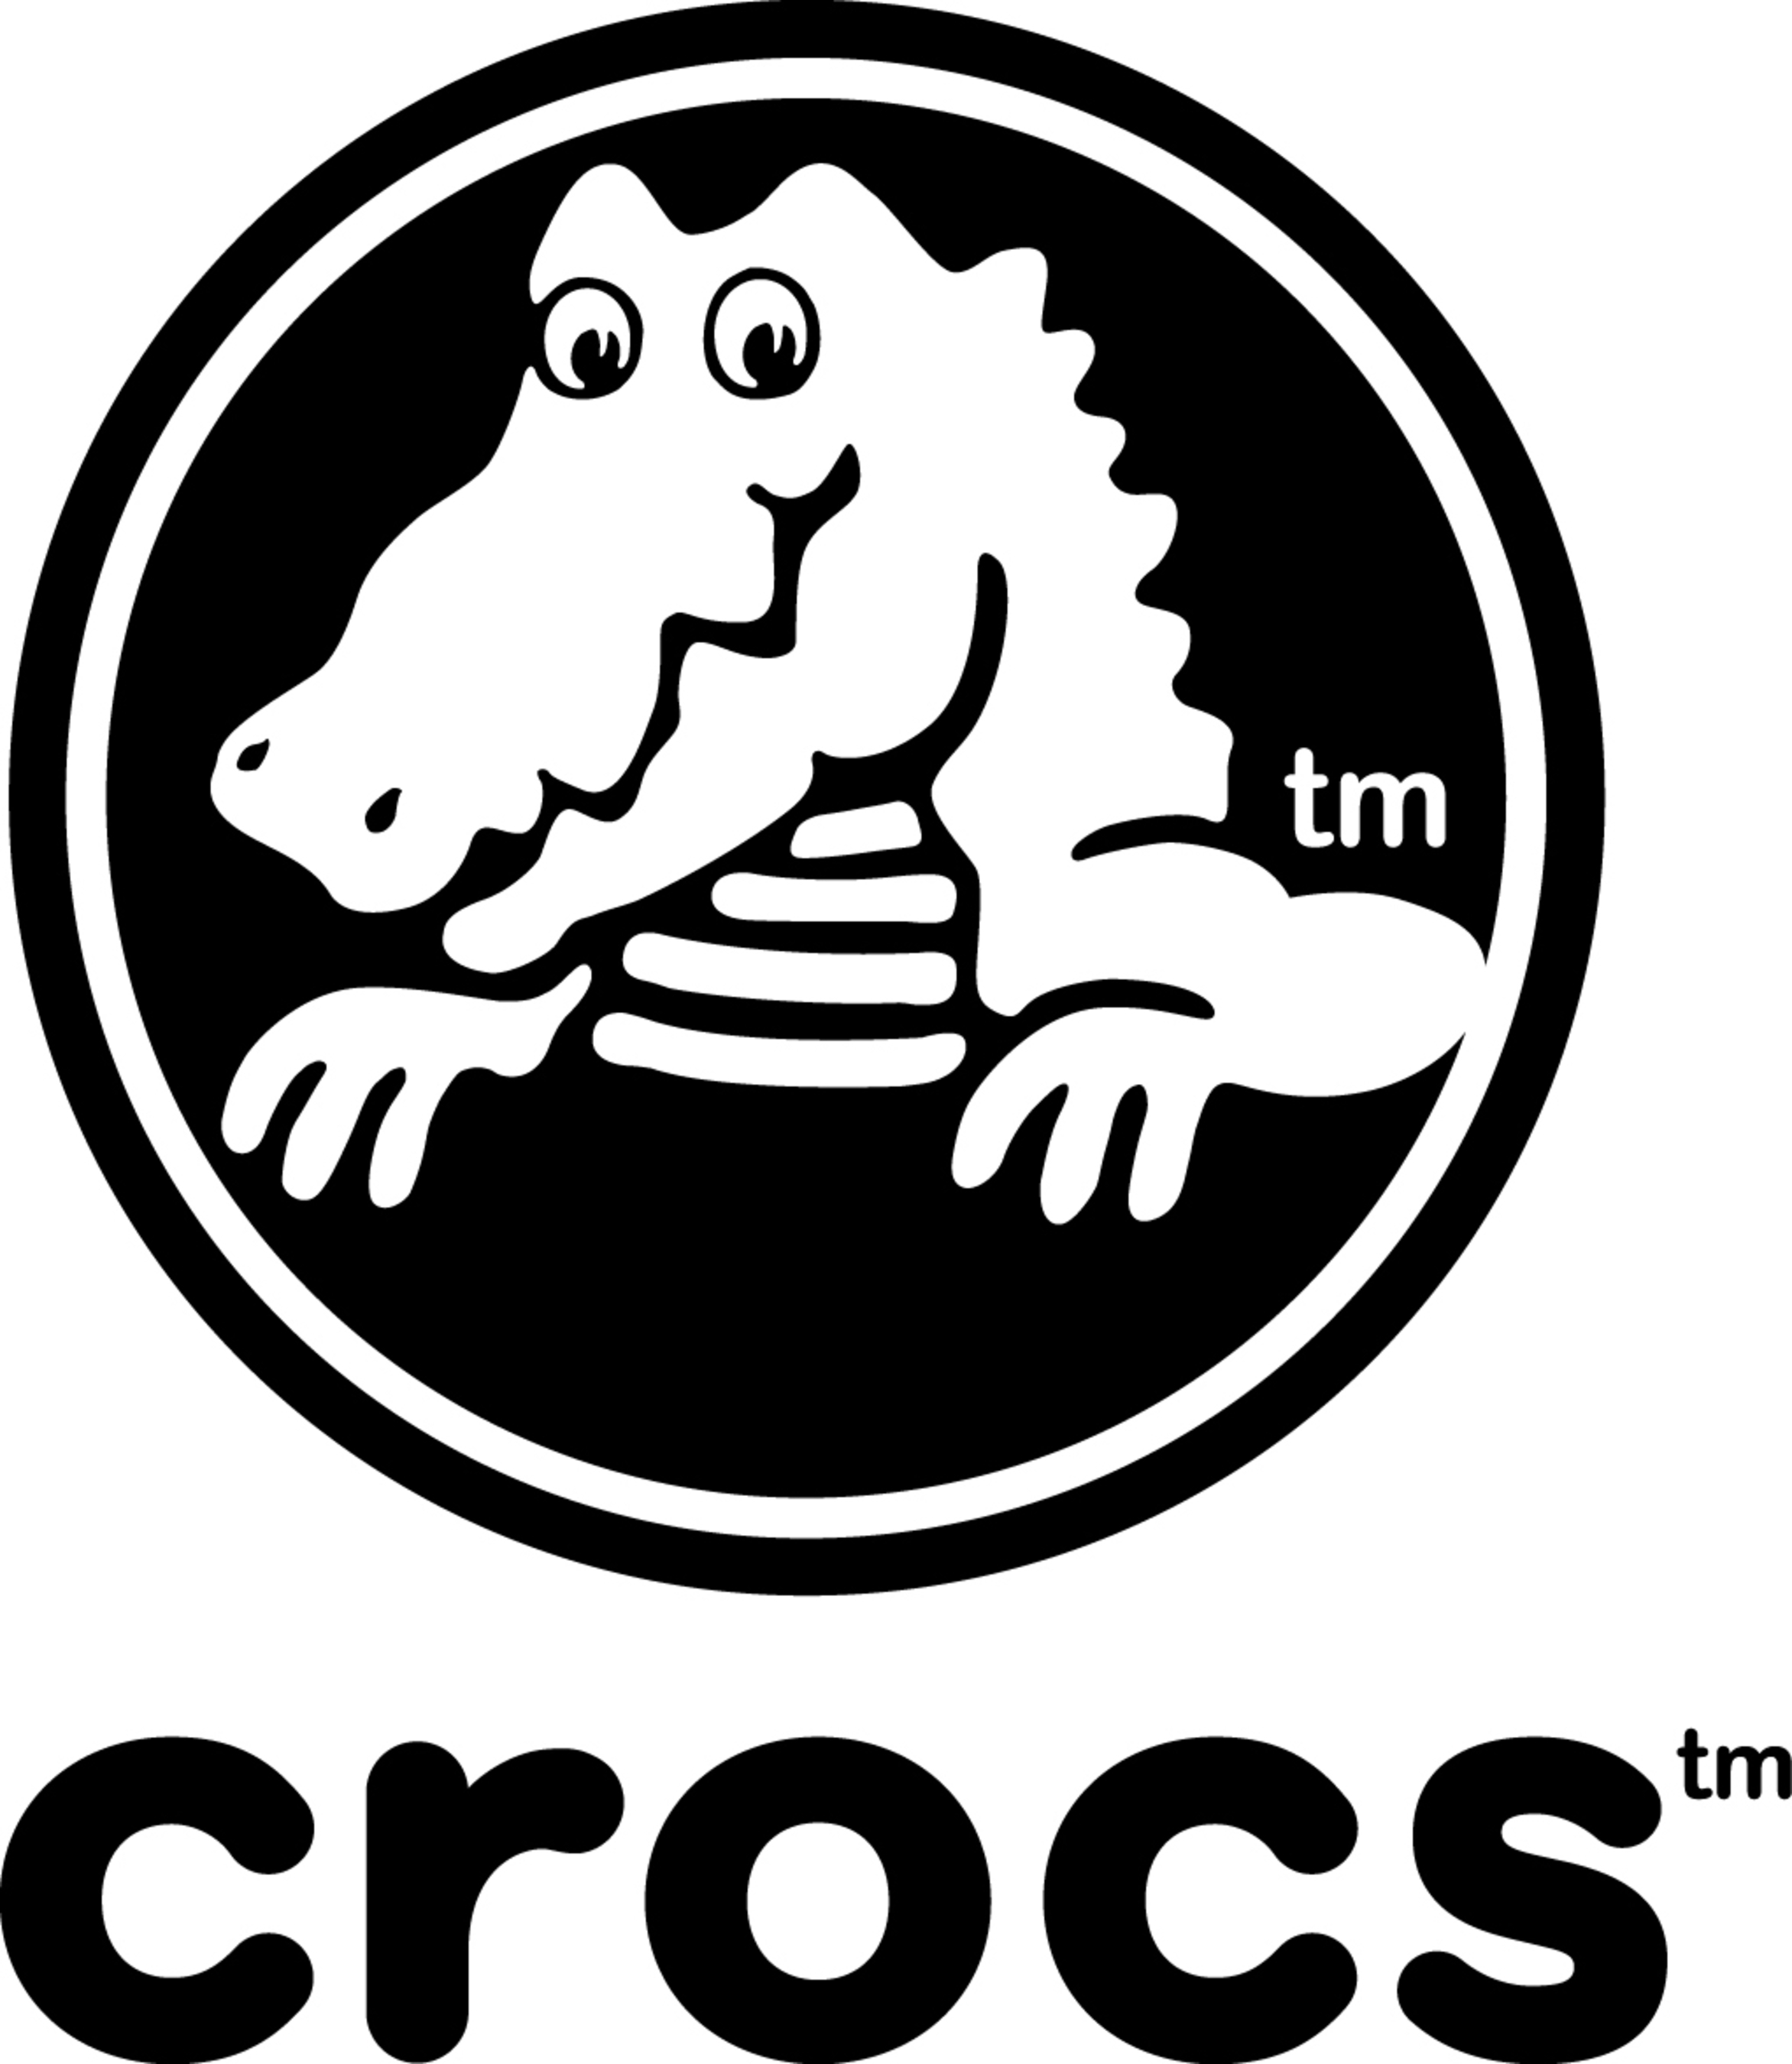 Crocs, Inc. (PRNewsFoto/Crocs, Inc.) (PRNewsFoto/)